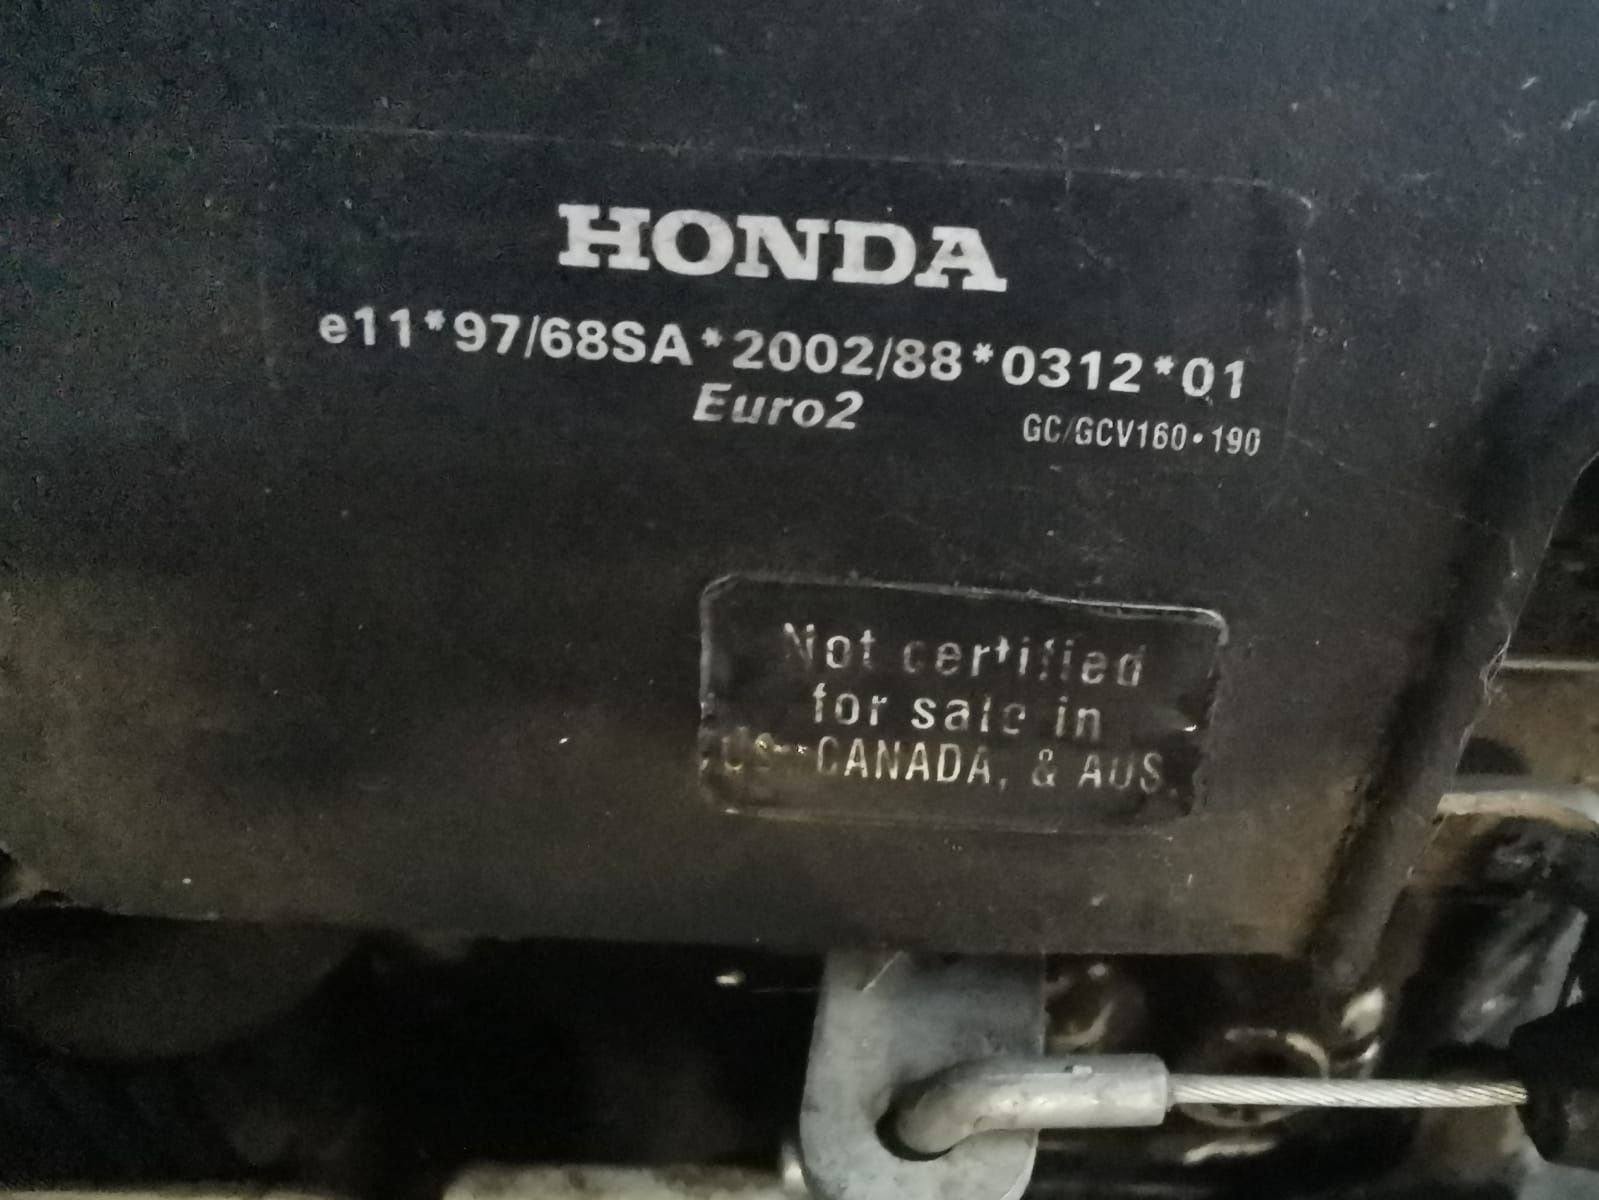 Sprzedam kosiarkę z silnikiem Honda cena ostateczna GCV 190